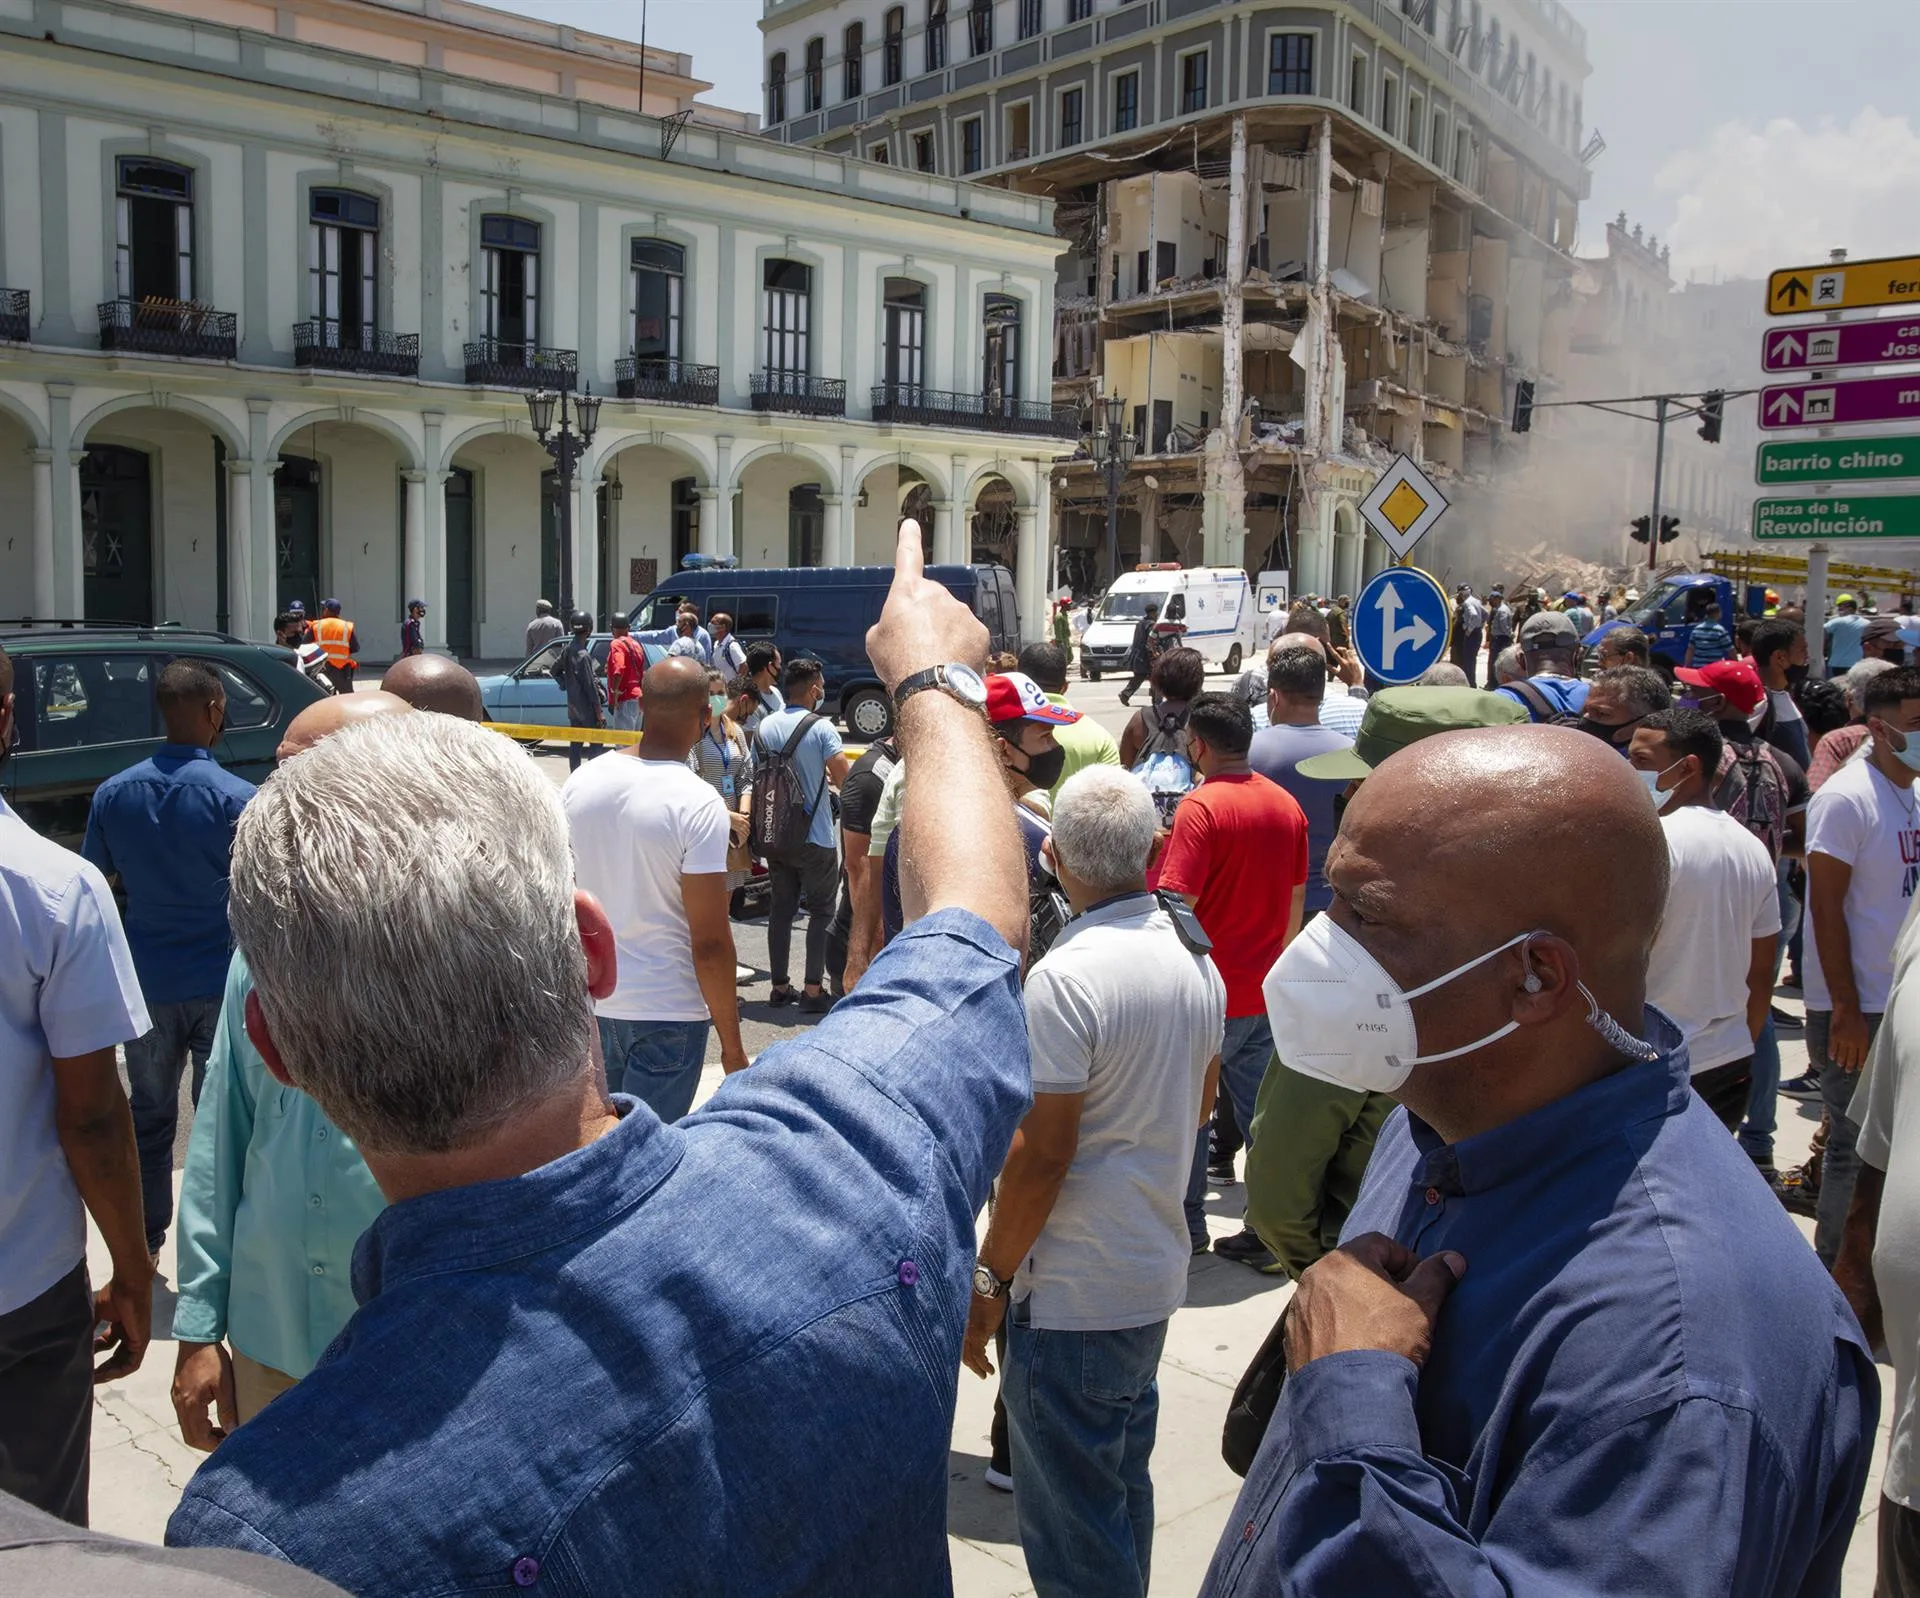 22 muertos y 64 heridos en hotel de lujo que explotó en La Habana